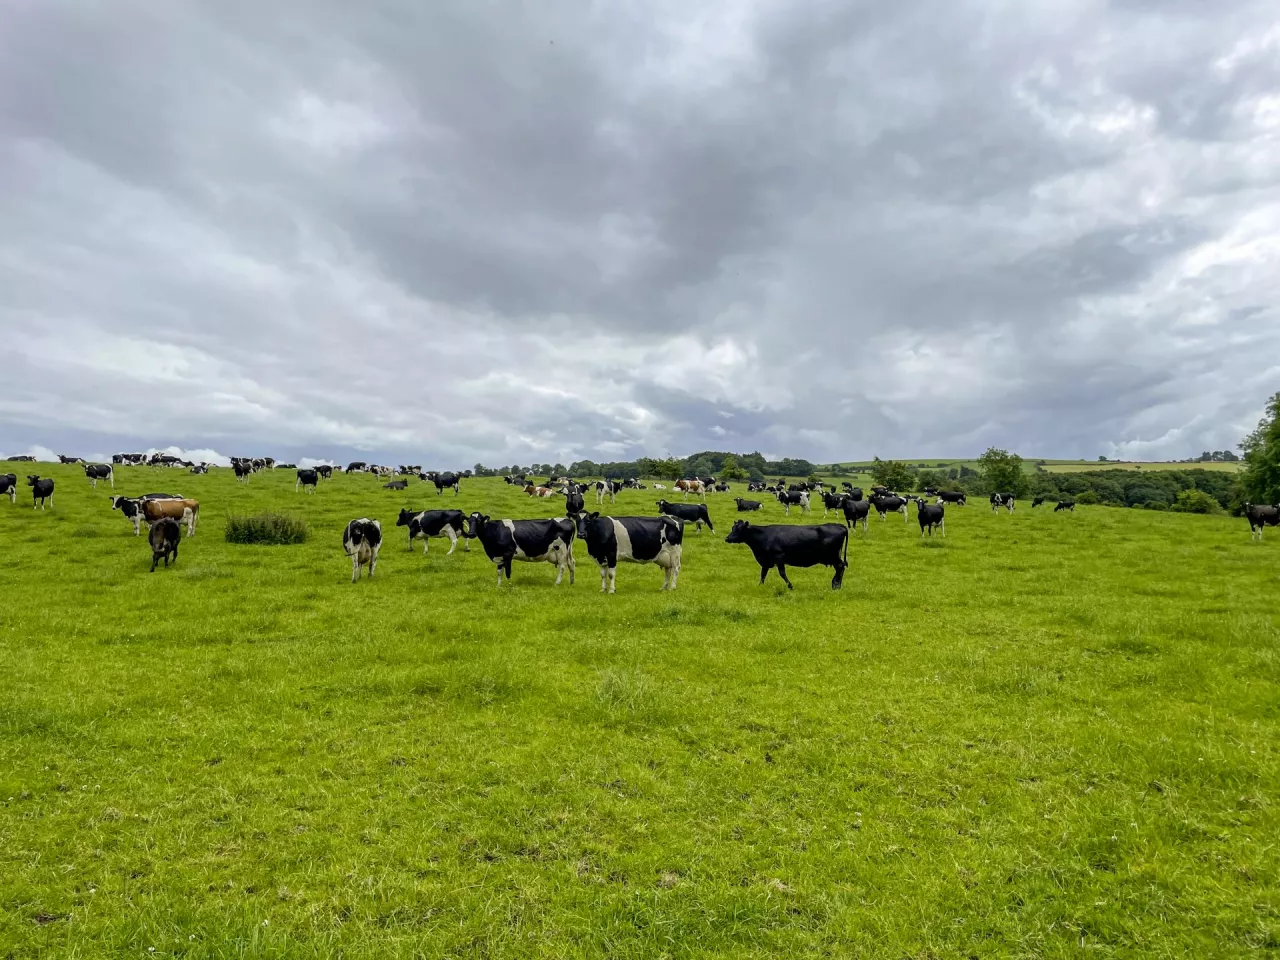 &lt;p&gt;Wiodąca rola z punktu cięcia kosztów – dzięki produkcji mleka na pastwiskach i sezonowym wycieleniom, irlandzkie gospodarstwa mleczne mają najniższe koszty w porównaniu z innymi krajami zrzeszonymi w EDF. Jednak i tutaj koszty rosną, zwłaszcza te związane z cenami gruntów&lt;/p&gt;